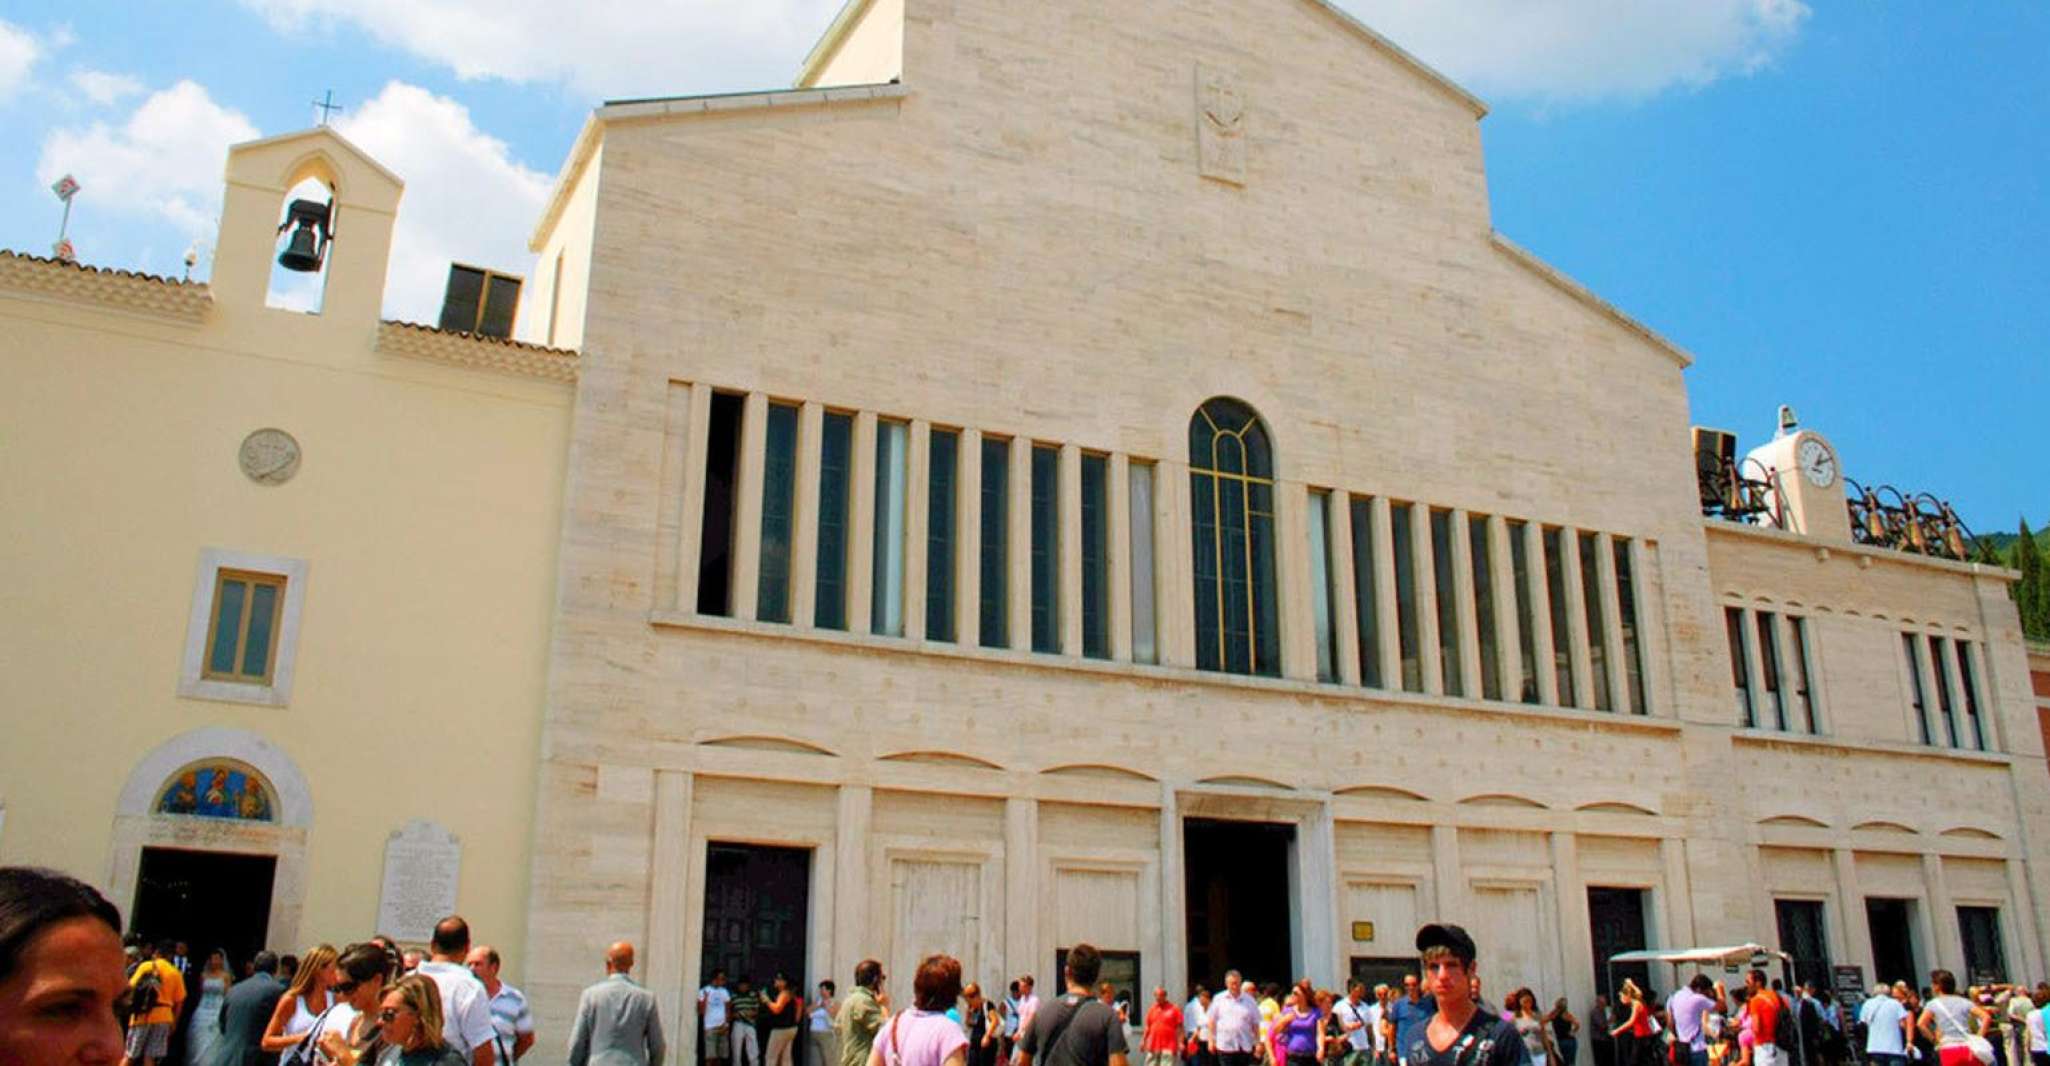 San Giovanni Rotondo, Spiritual Experience of Saint Pio - Housity